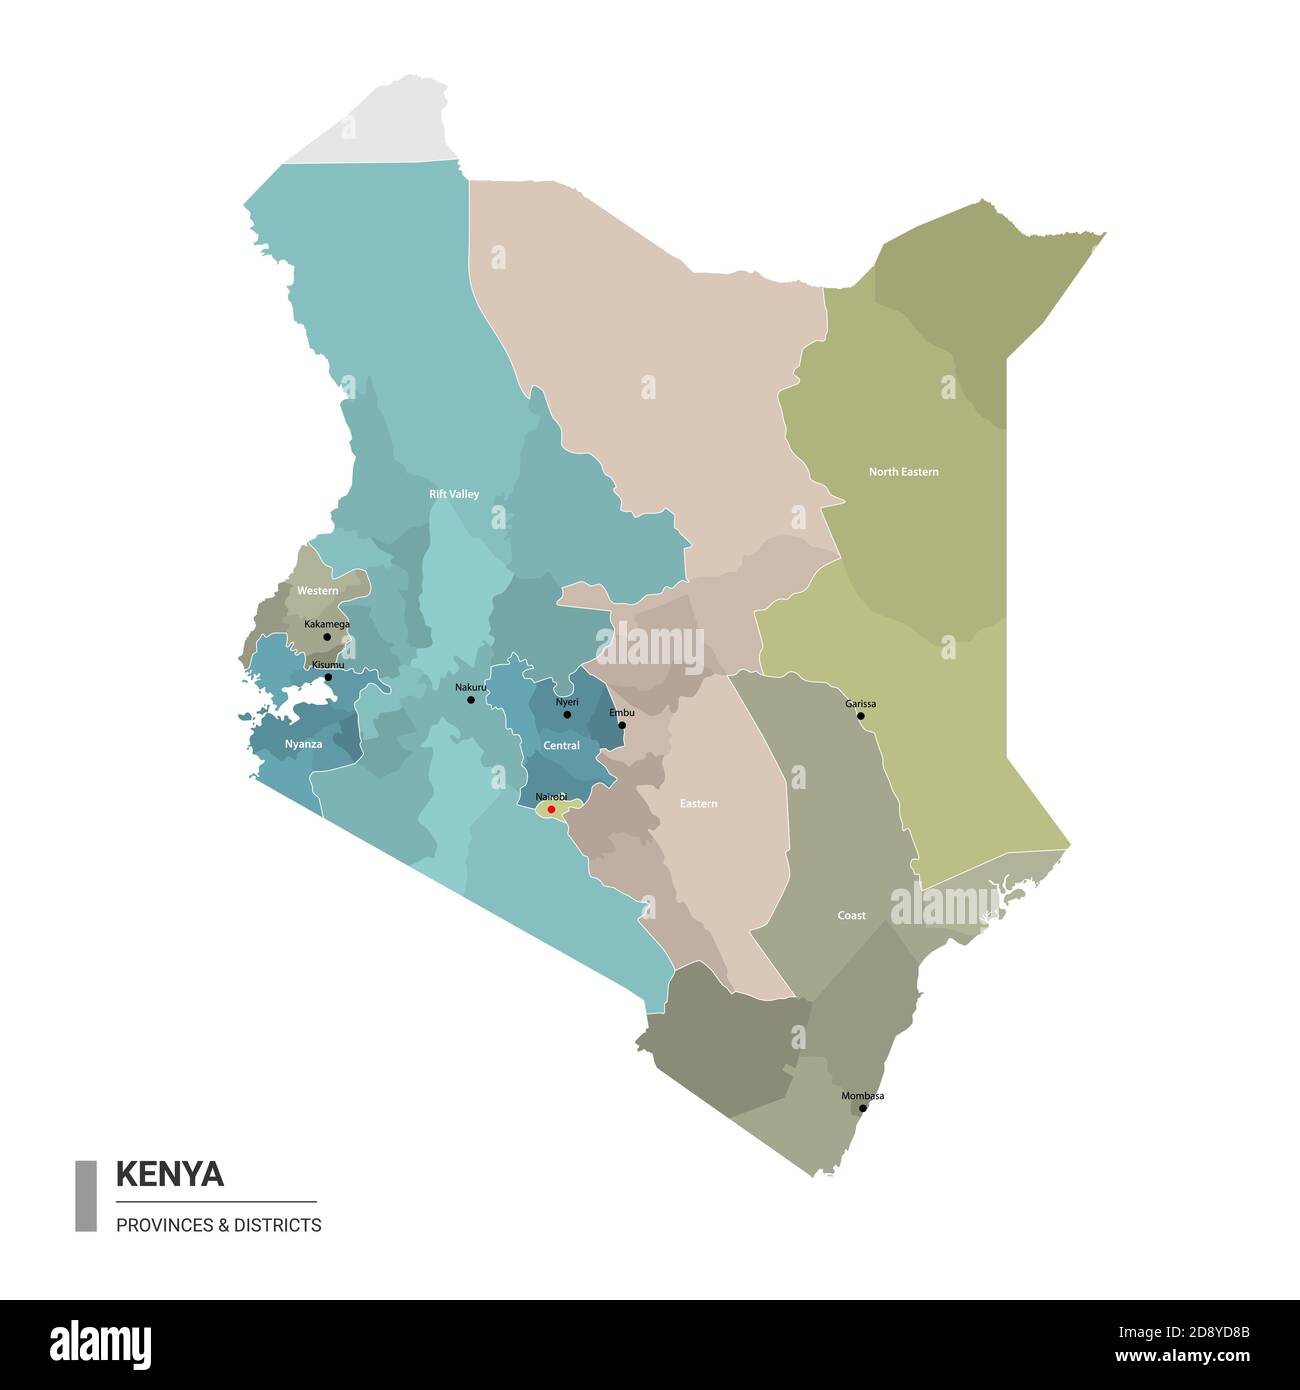 Kenya higt mappa dettagliata con suddivisioni. Mappa amministrativa del Kenya con il nome dei distretti e delle città, colorata per stati e distretti amministrativi. Illustrazione Vettoriale